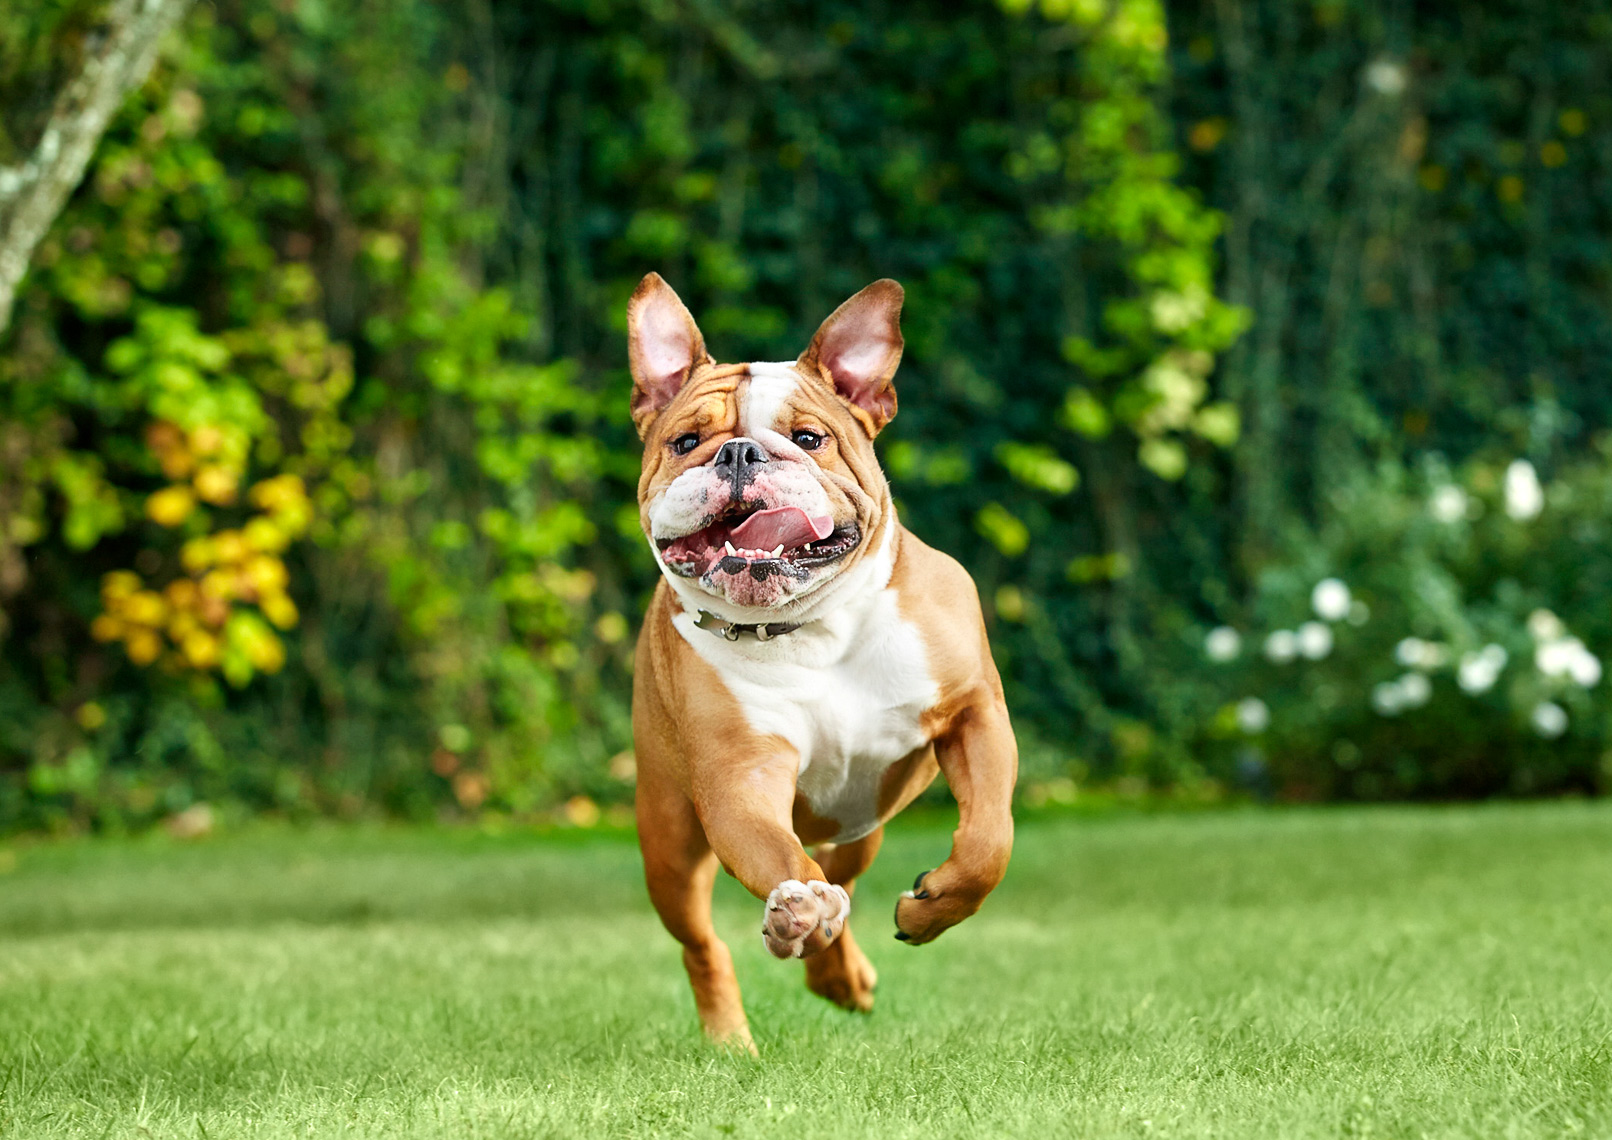 Bulldog running to camera